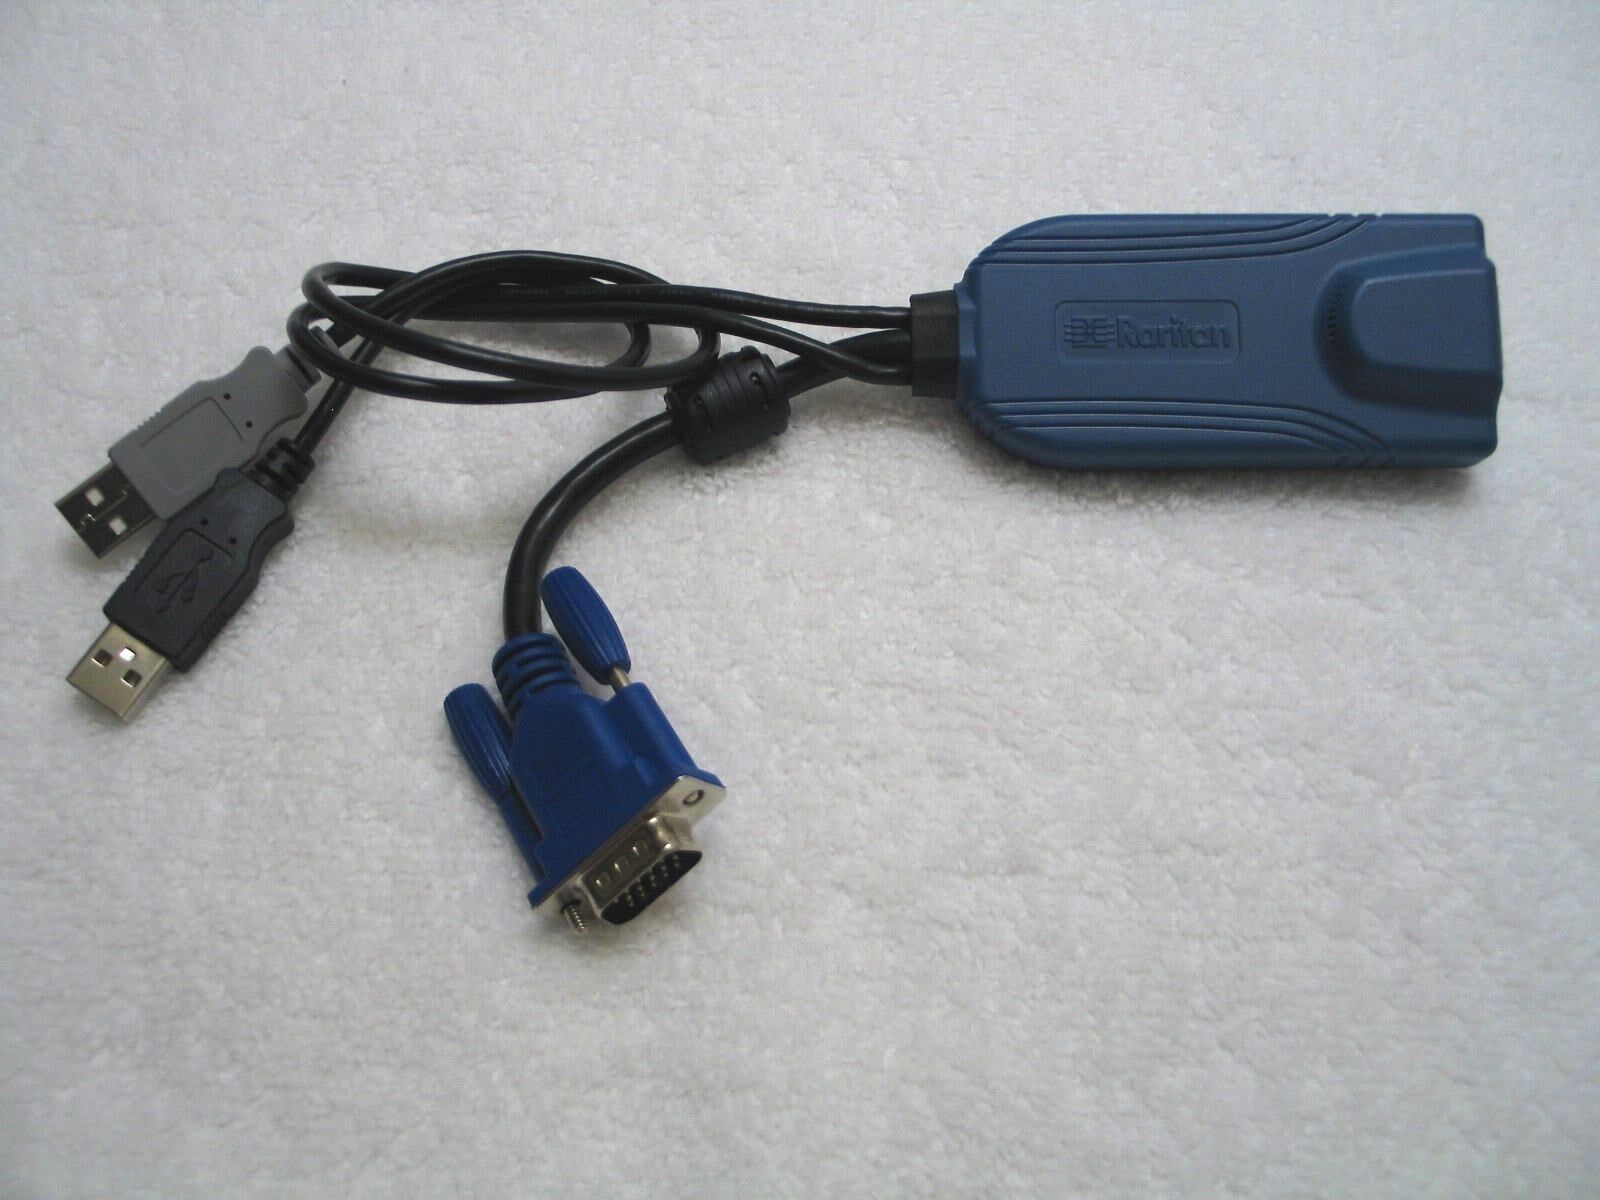 RARITAN Dominion KX II KVM CIM - Model D2CIM-DVUSB Dual USB & VGA Adapter Dongle